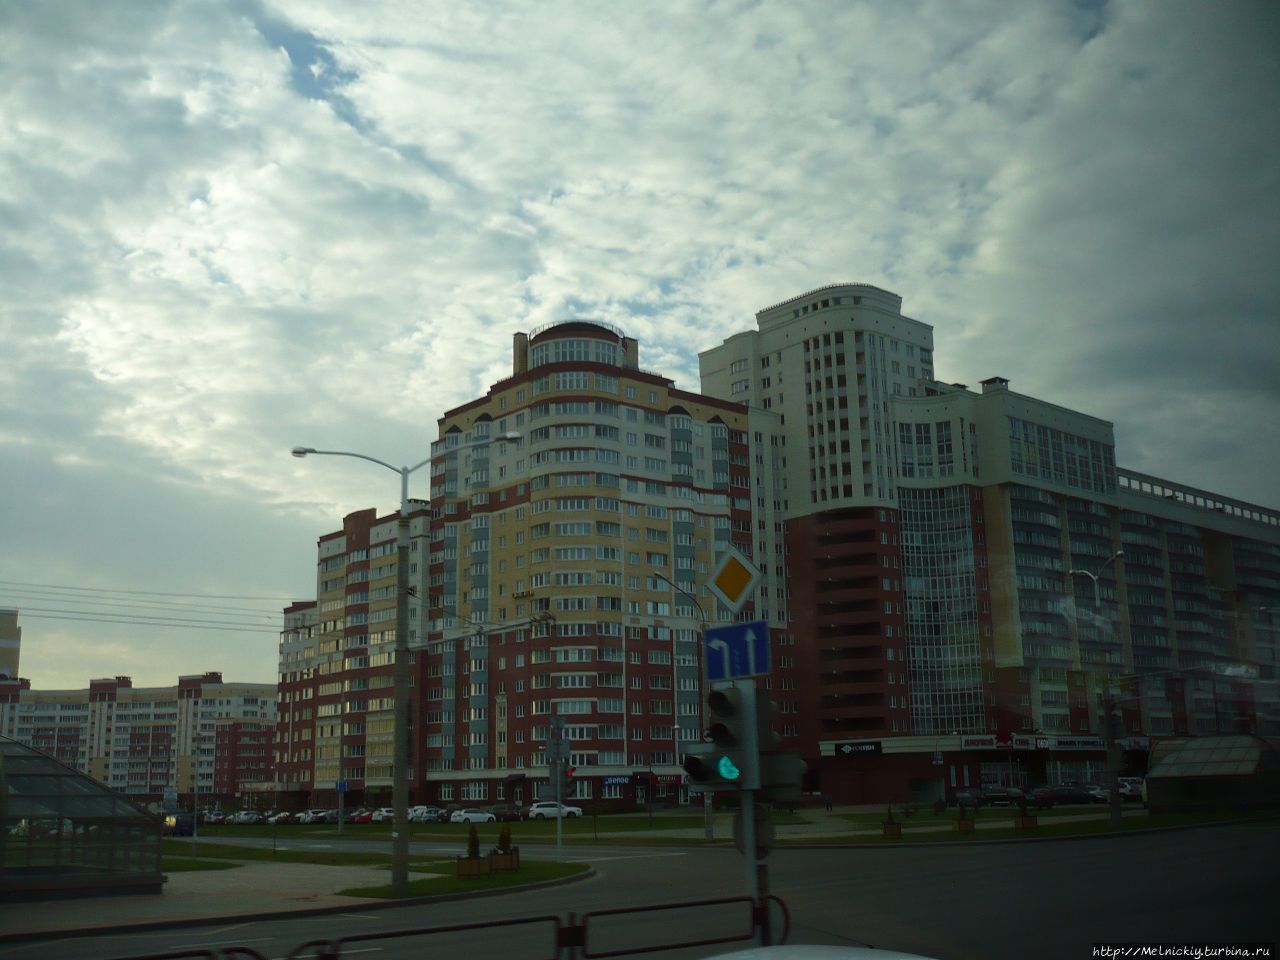 Минск из окна туристического автобуса Минск, Беларусь